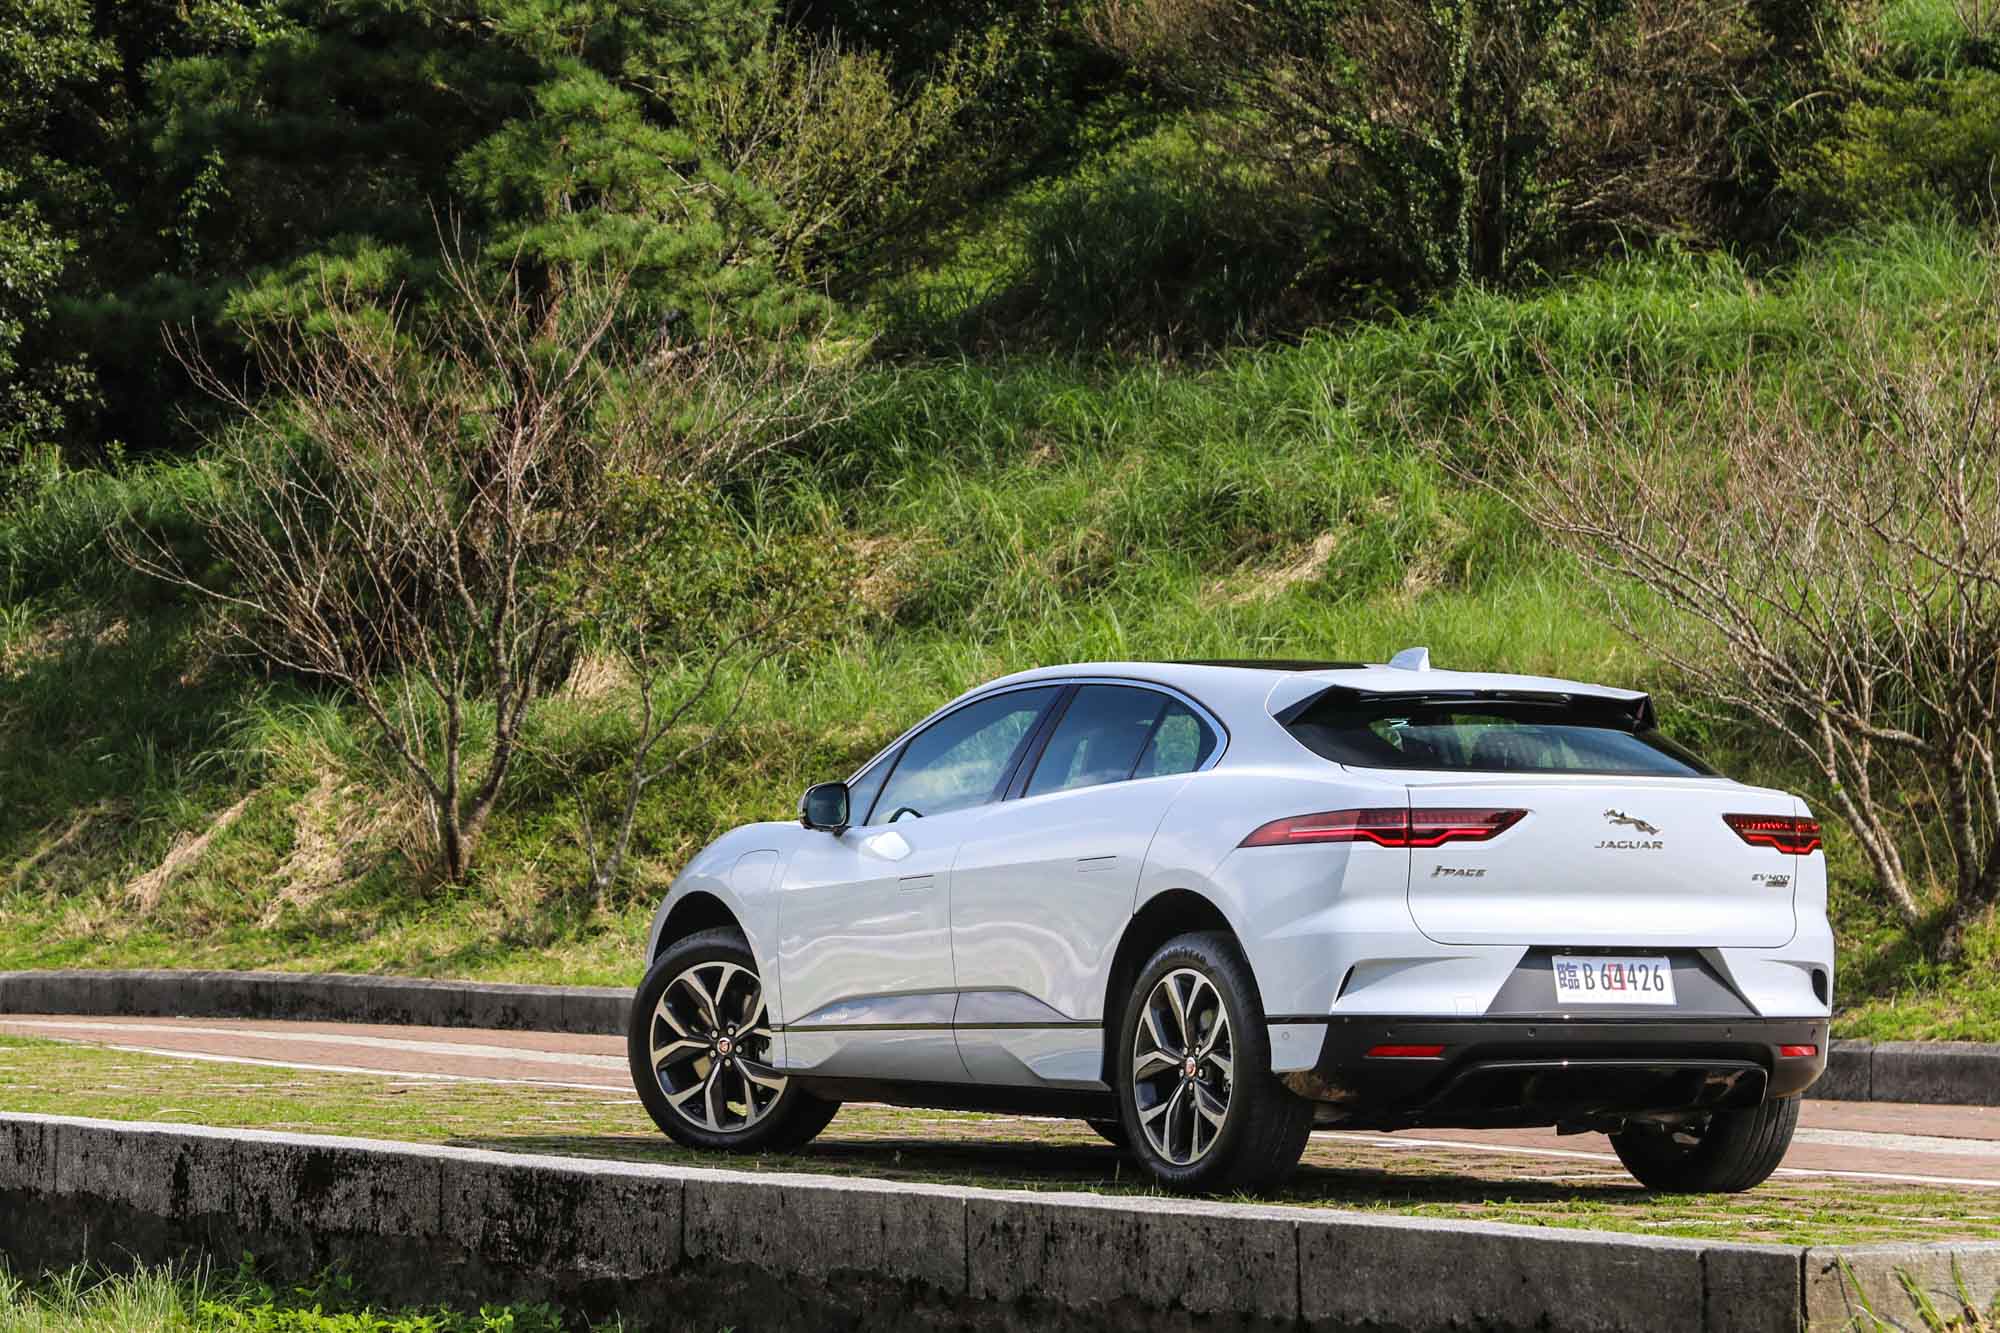 論汽車設計美感，Jaguar 這品牌絕對有資格說上個幾句。